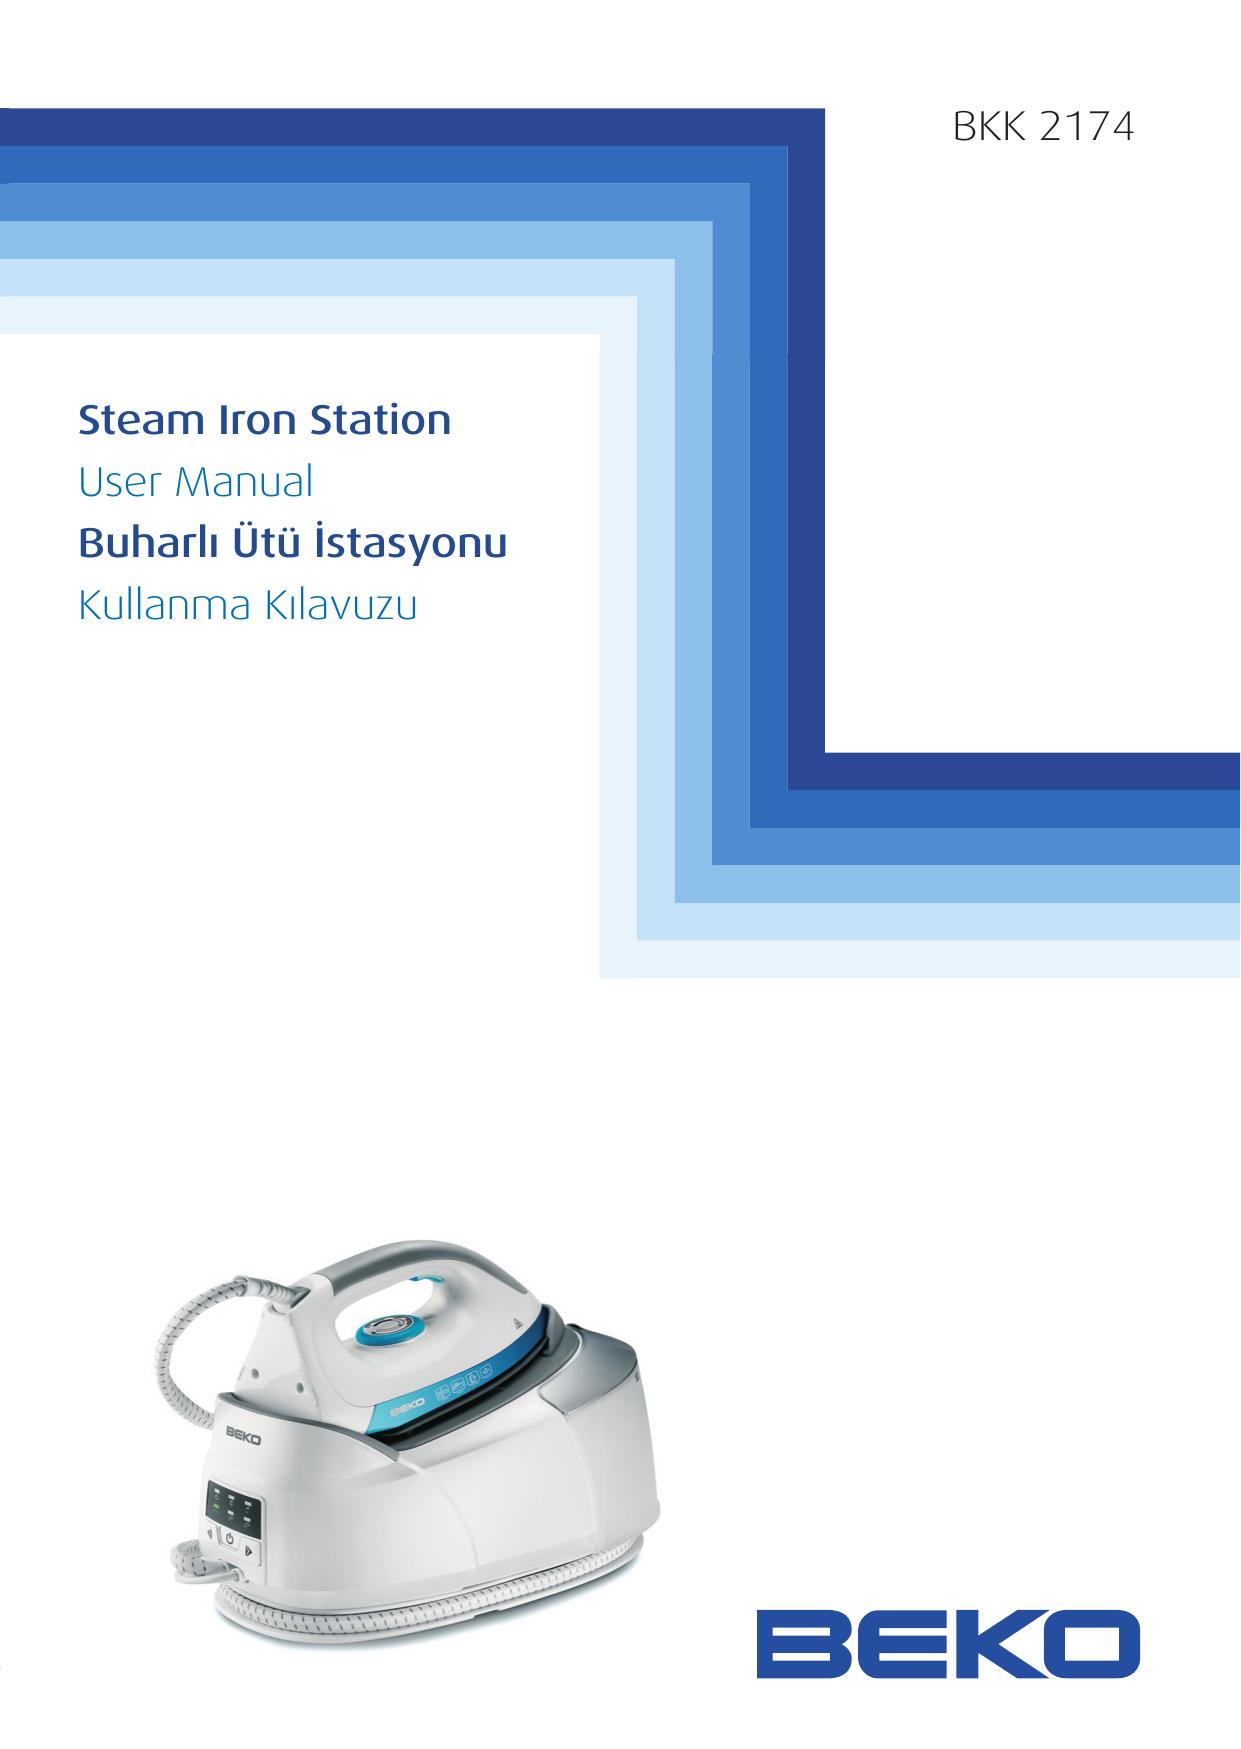 Beko BKK2174 Iron User Manual (Page 1)